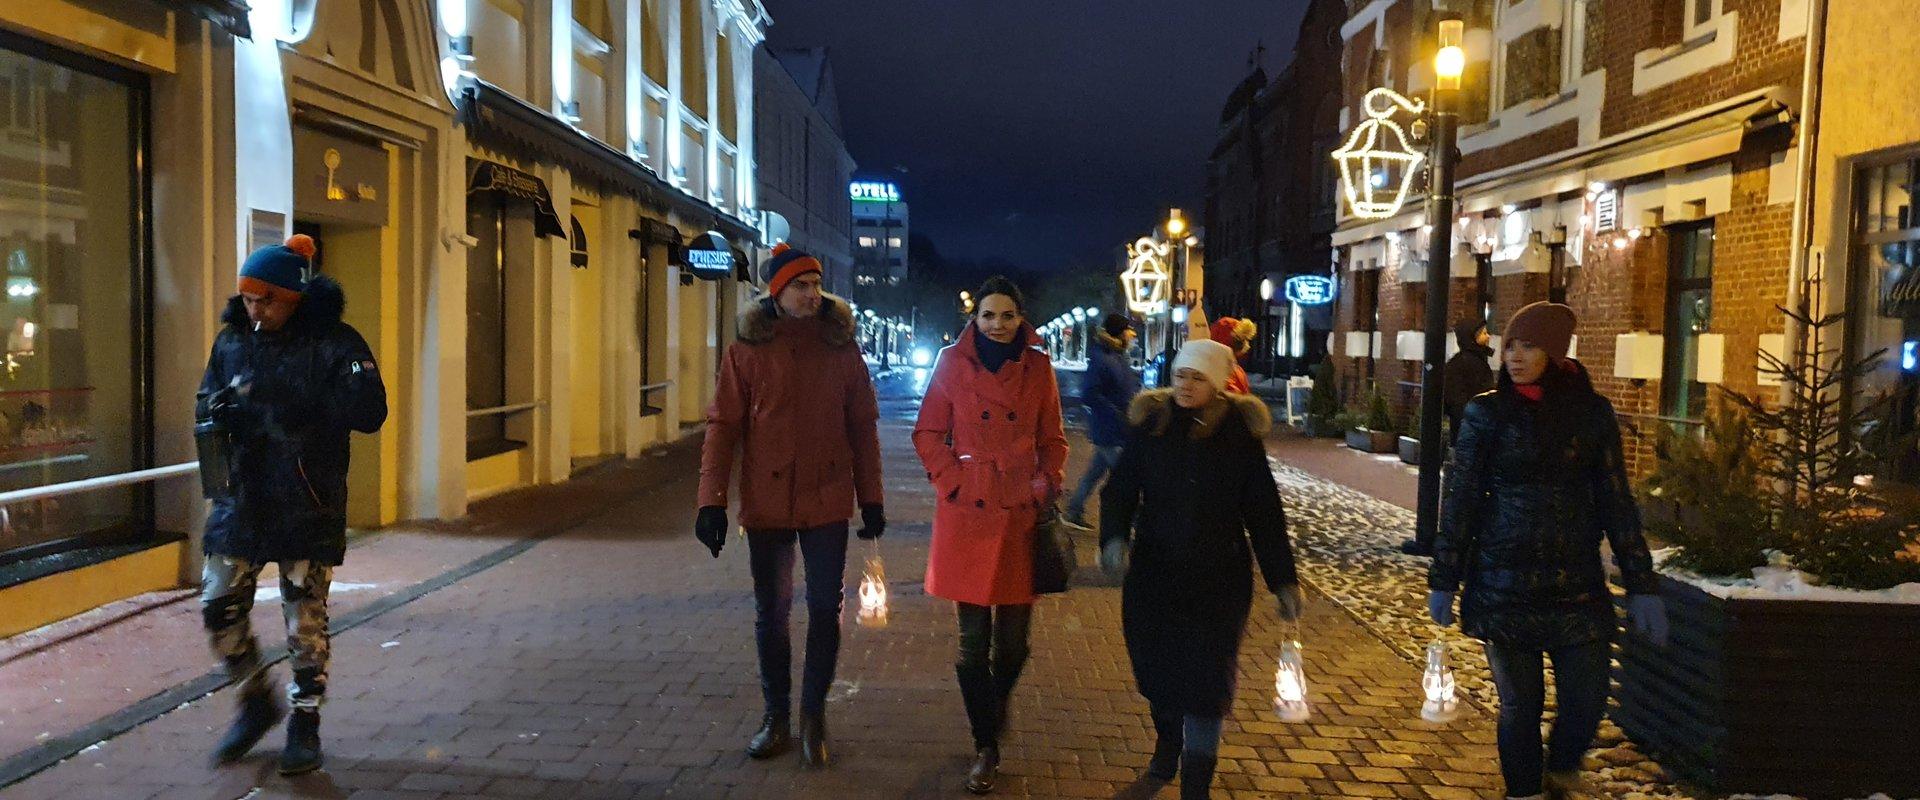 Pärnu lantern tour with a guide